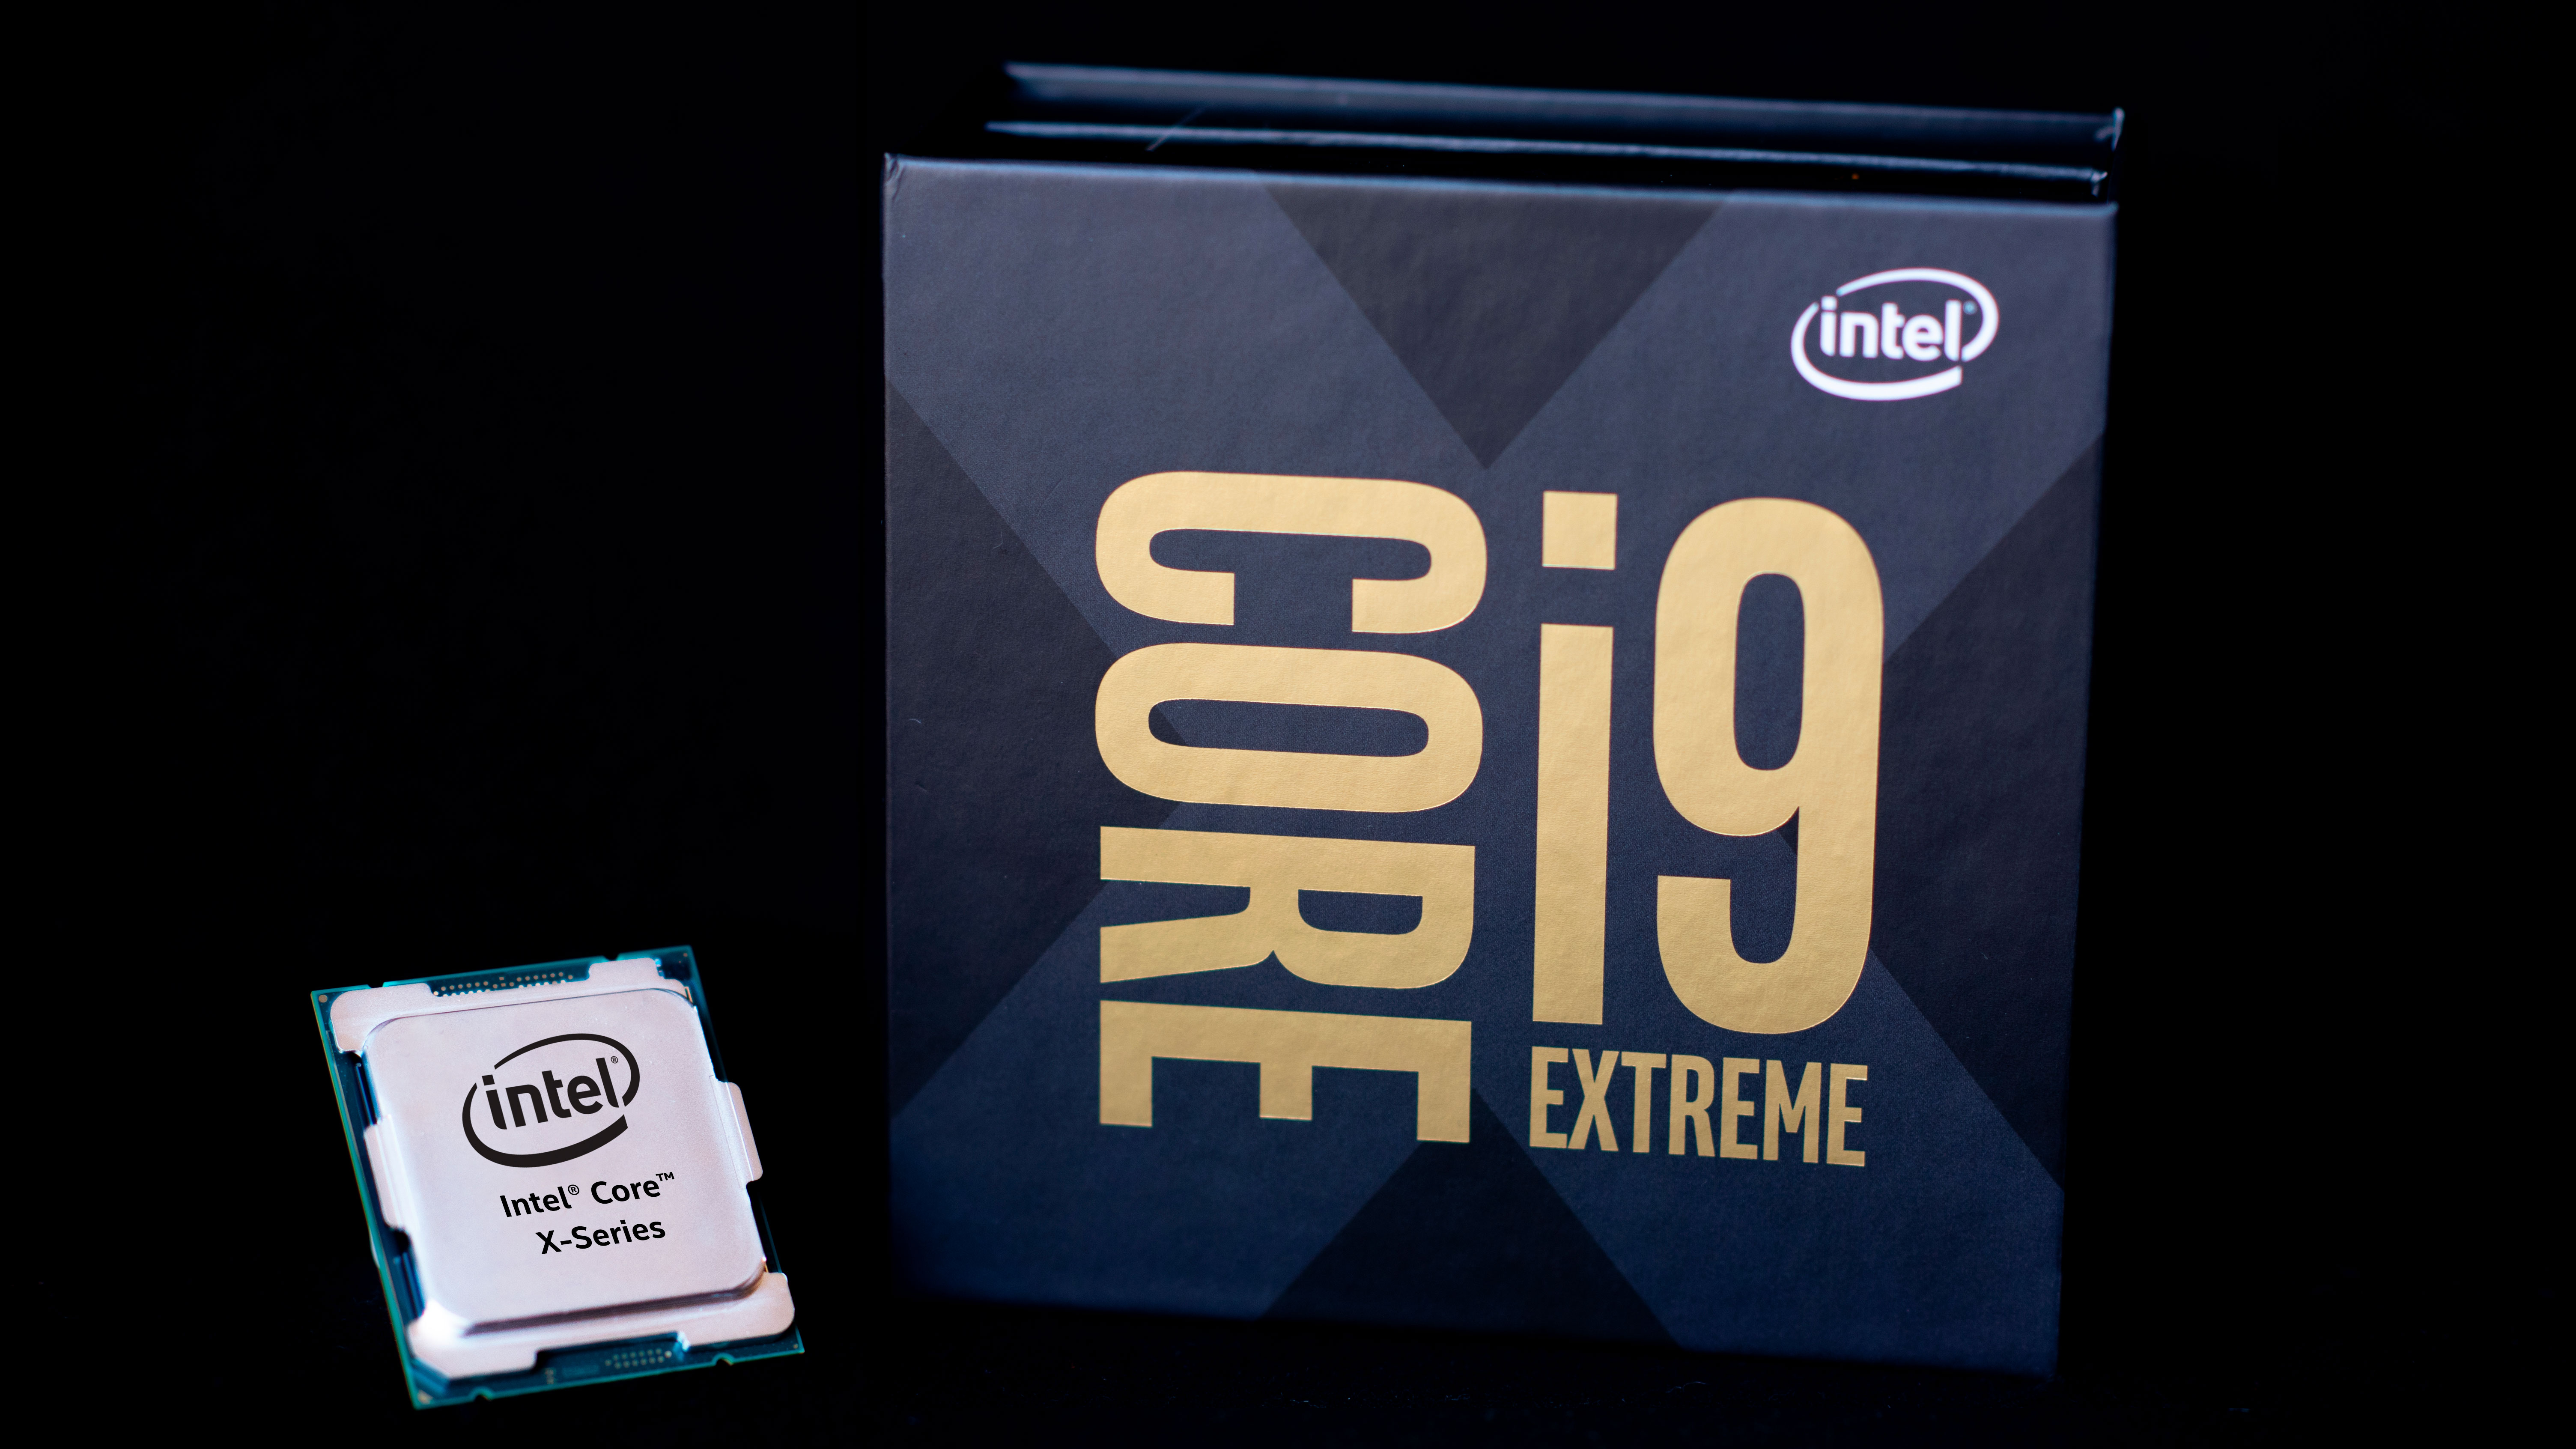 Процессор интел 9. Процессор Intel Core i9. Процессор Intel Core i9-10980xe Box. Процессор Intel Core i9-10980xe extreme Edition. Intel Core i9 extreme x-Series Edition.